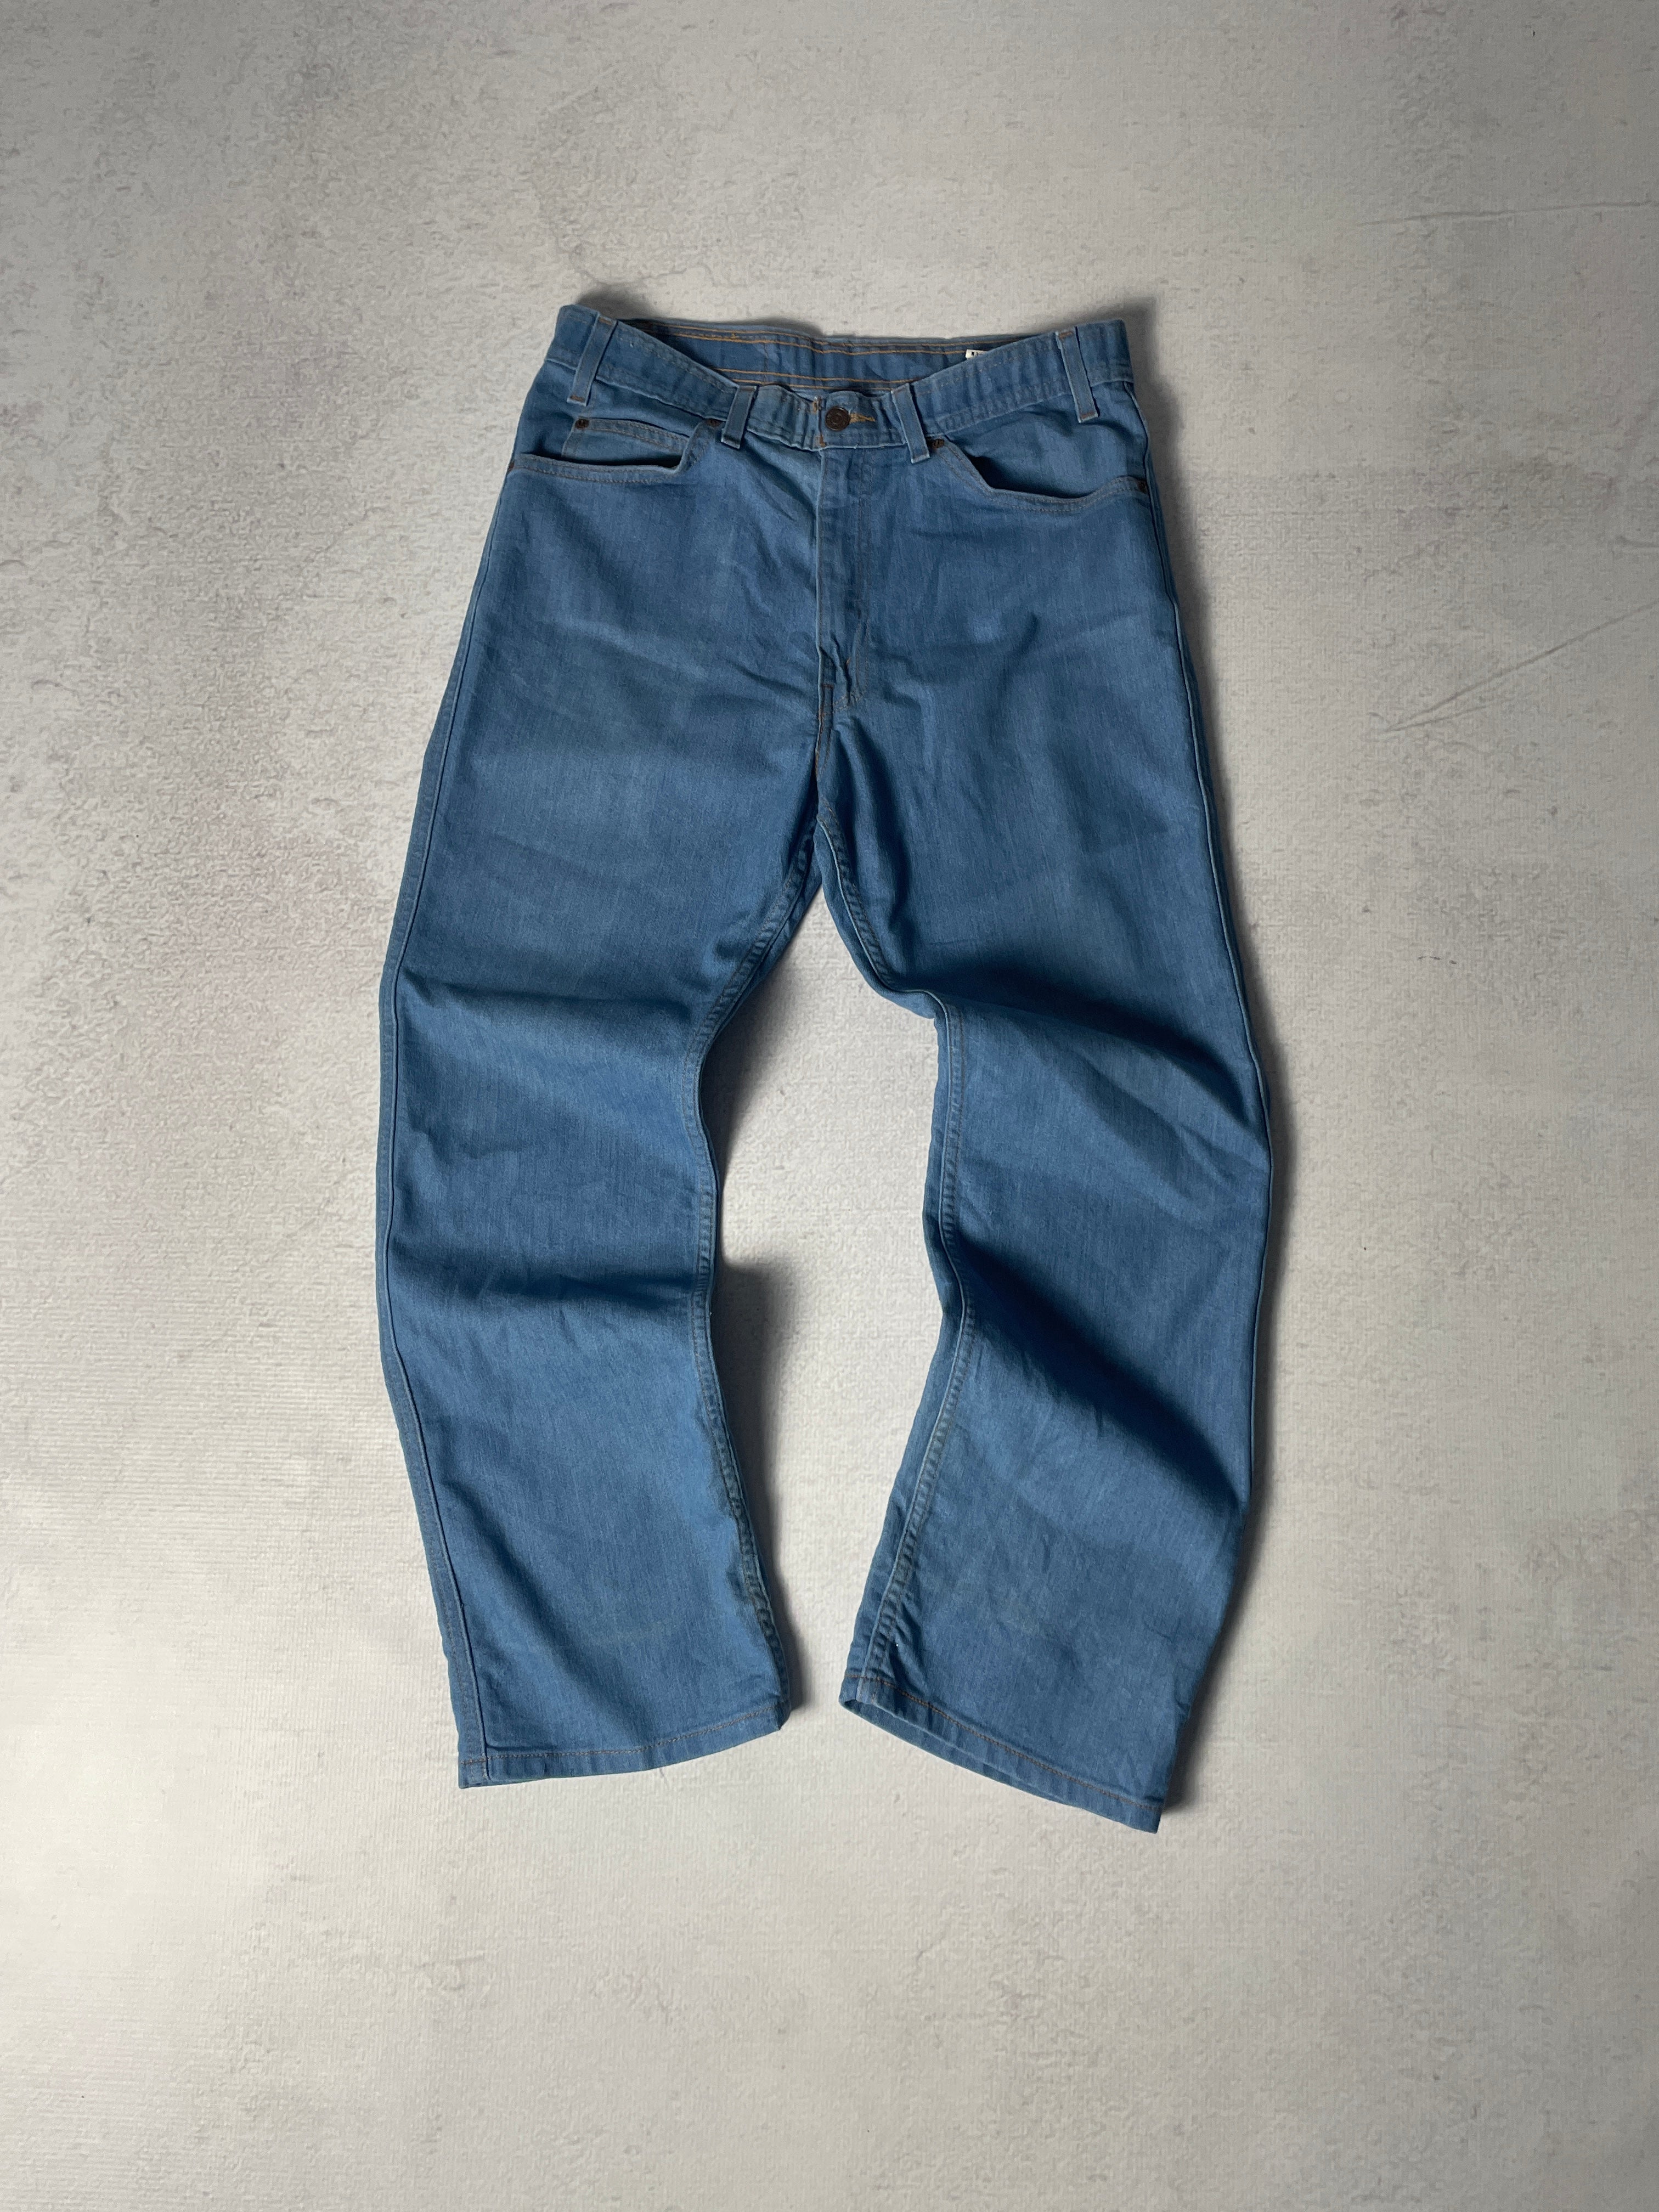 Vintage Levis Brown Tab Jeans - Women's 34Wx30L